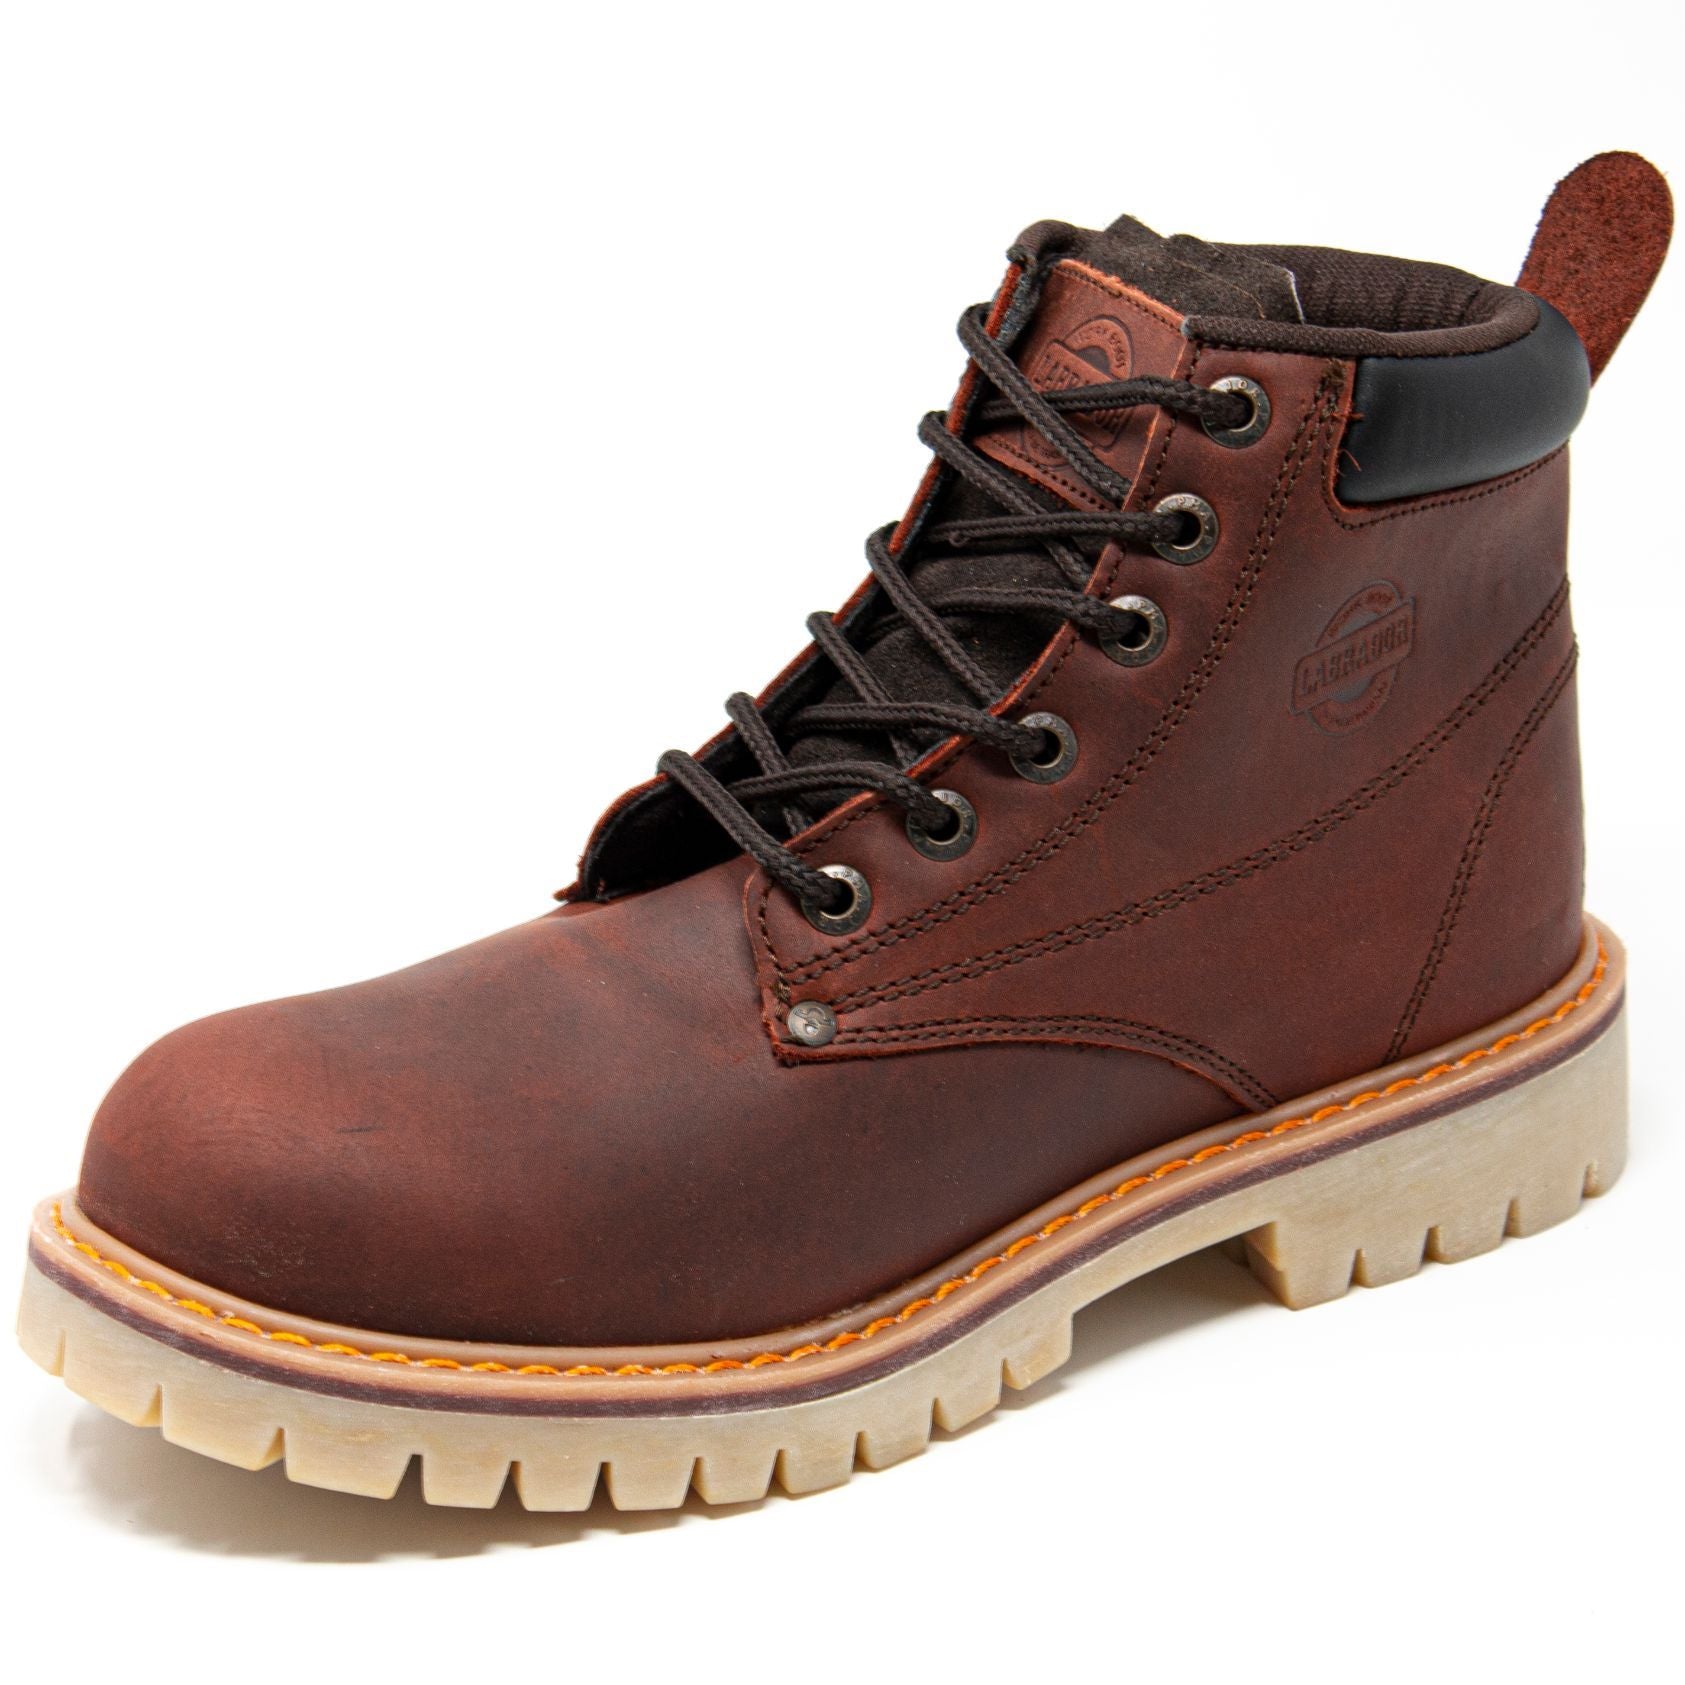 Men's Work Boots - Steel Toe & Heavy Duty - Brown Work Boots - Labrador - 6" Work Boots - Copper 6in Work Boots